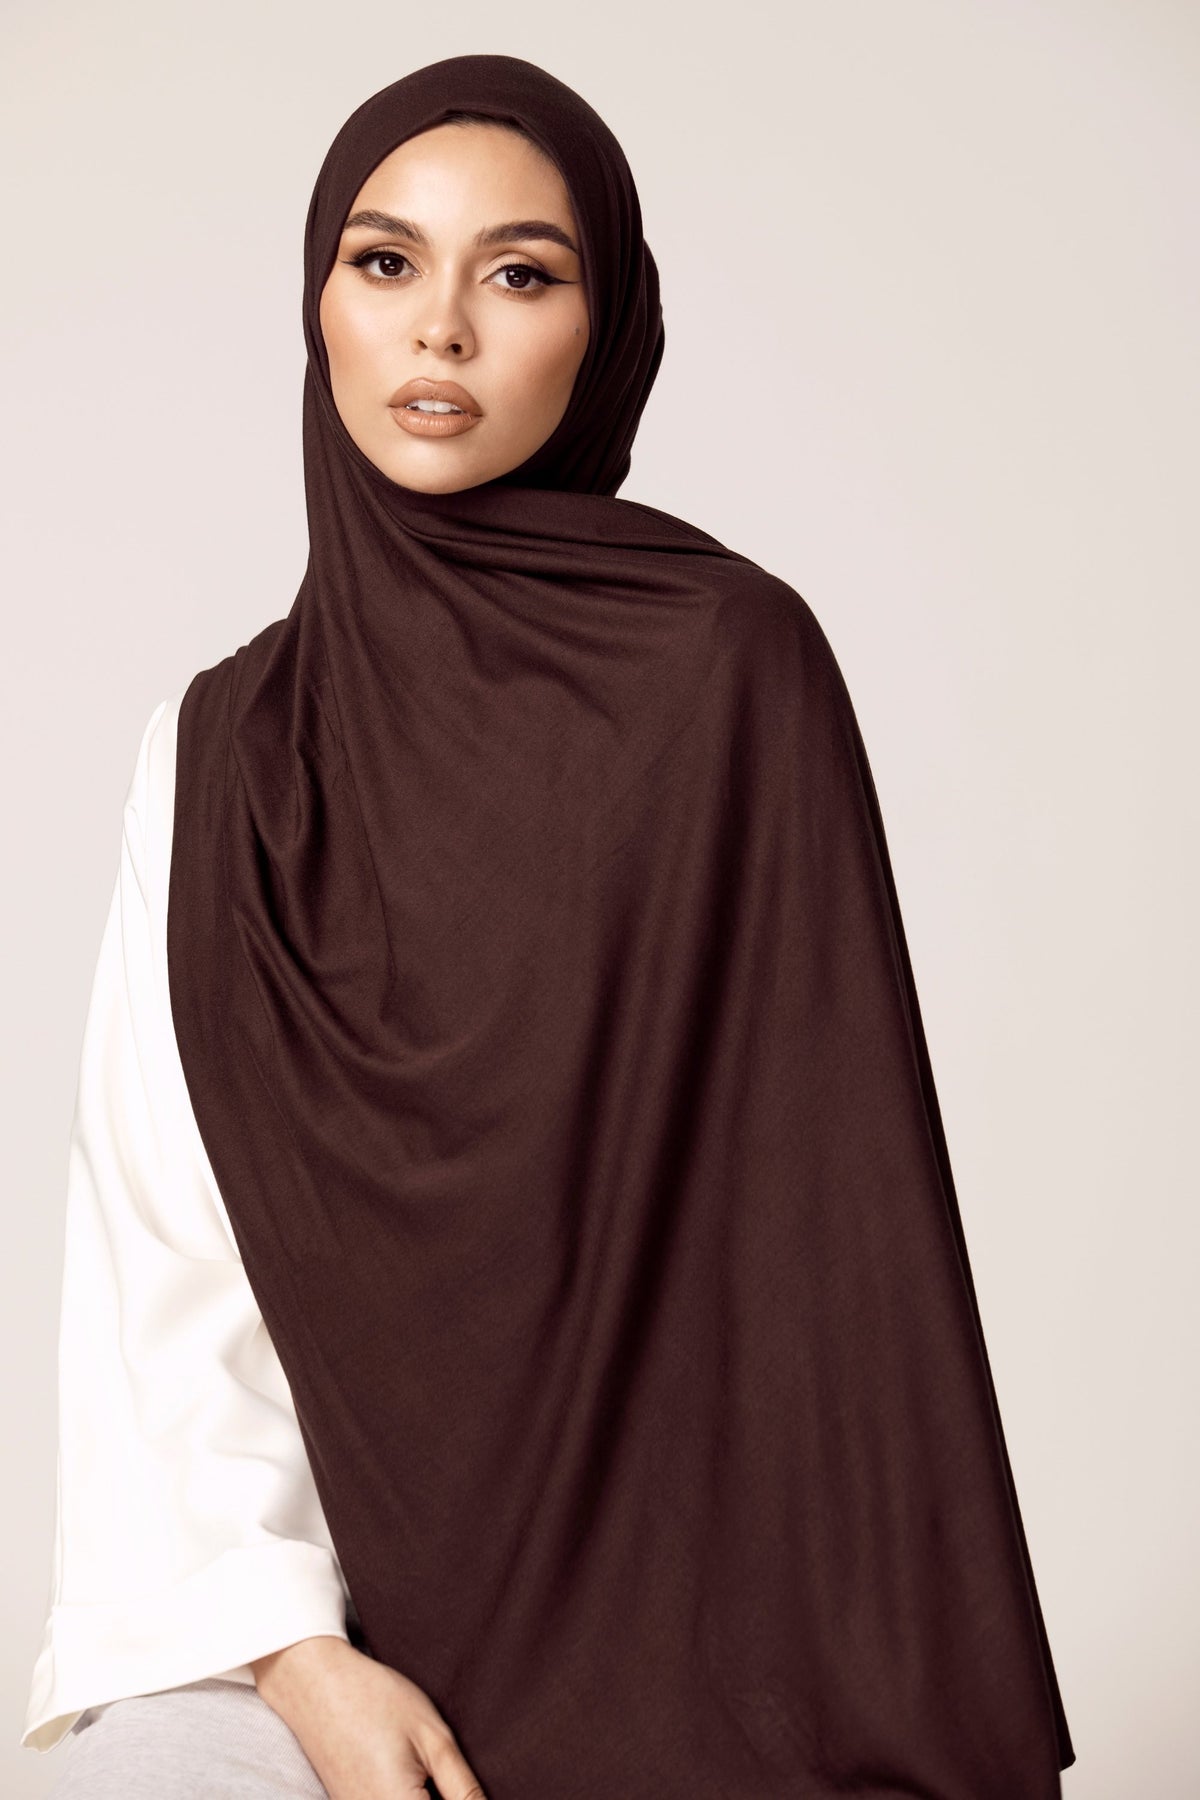 Luxury Jersey Hijab - Espresso epschoolboard 